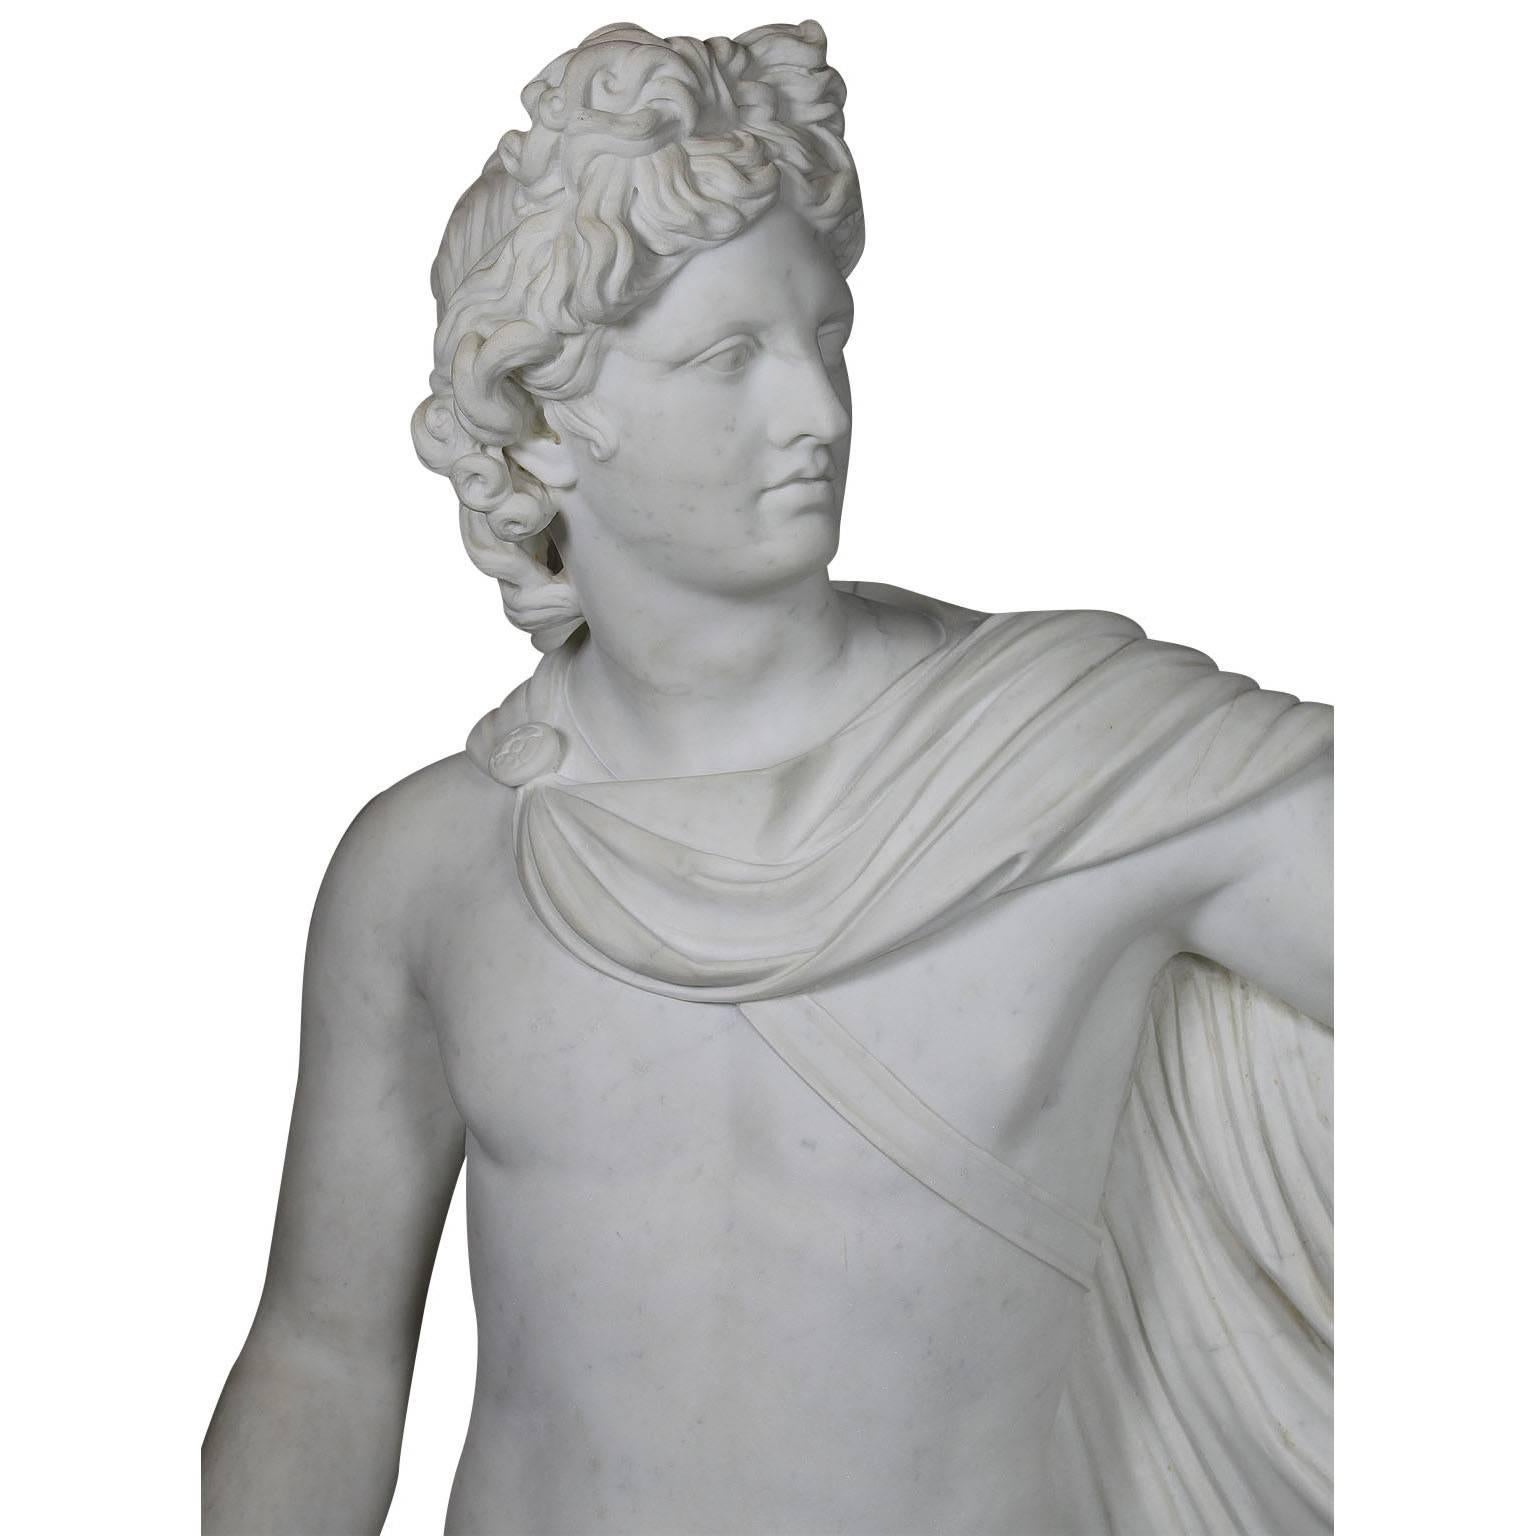 Ferdinando Vichi (Italiener, 1875-1945) Feine, lebensgroße Figur des griechisch-römischen Apollo aus weißem Carrara-Marmor, nach dem Original, das sich heute im Vatikanischen Museum befindet. Der Apollo des Belvedere definiert die griechischen